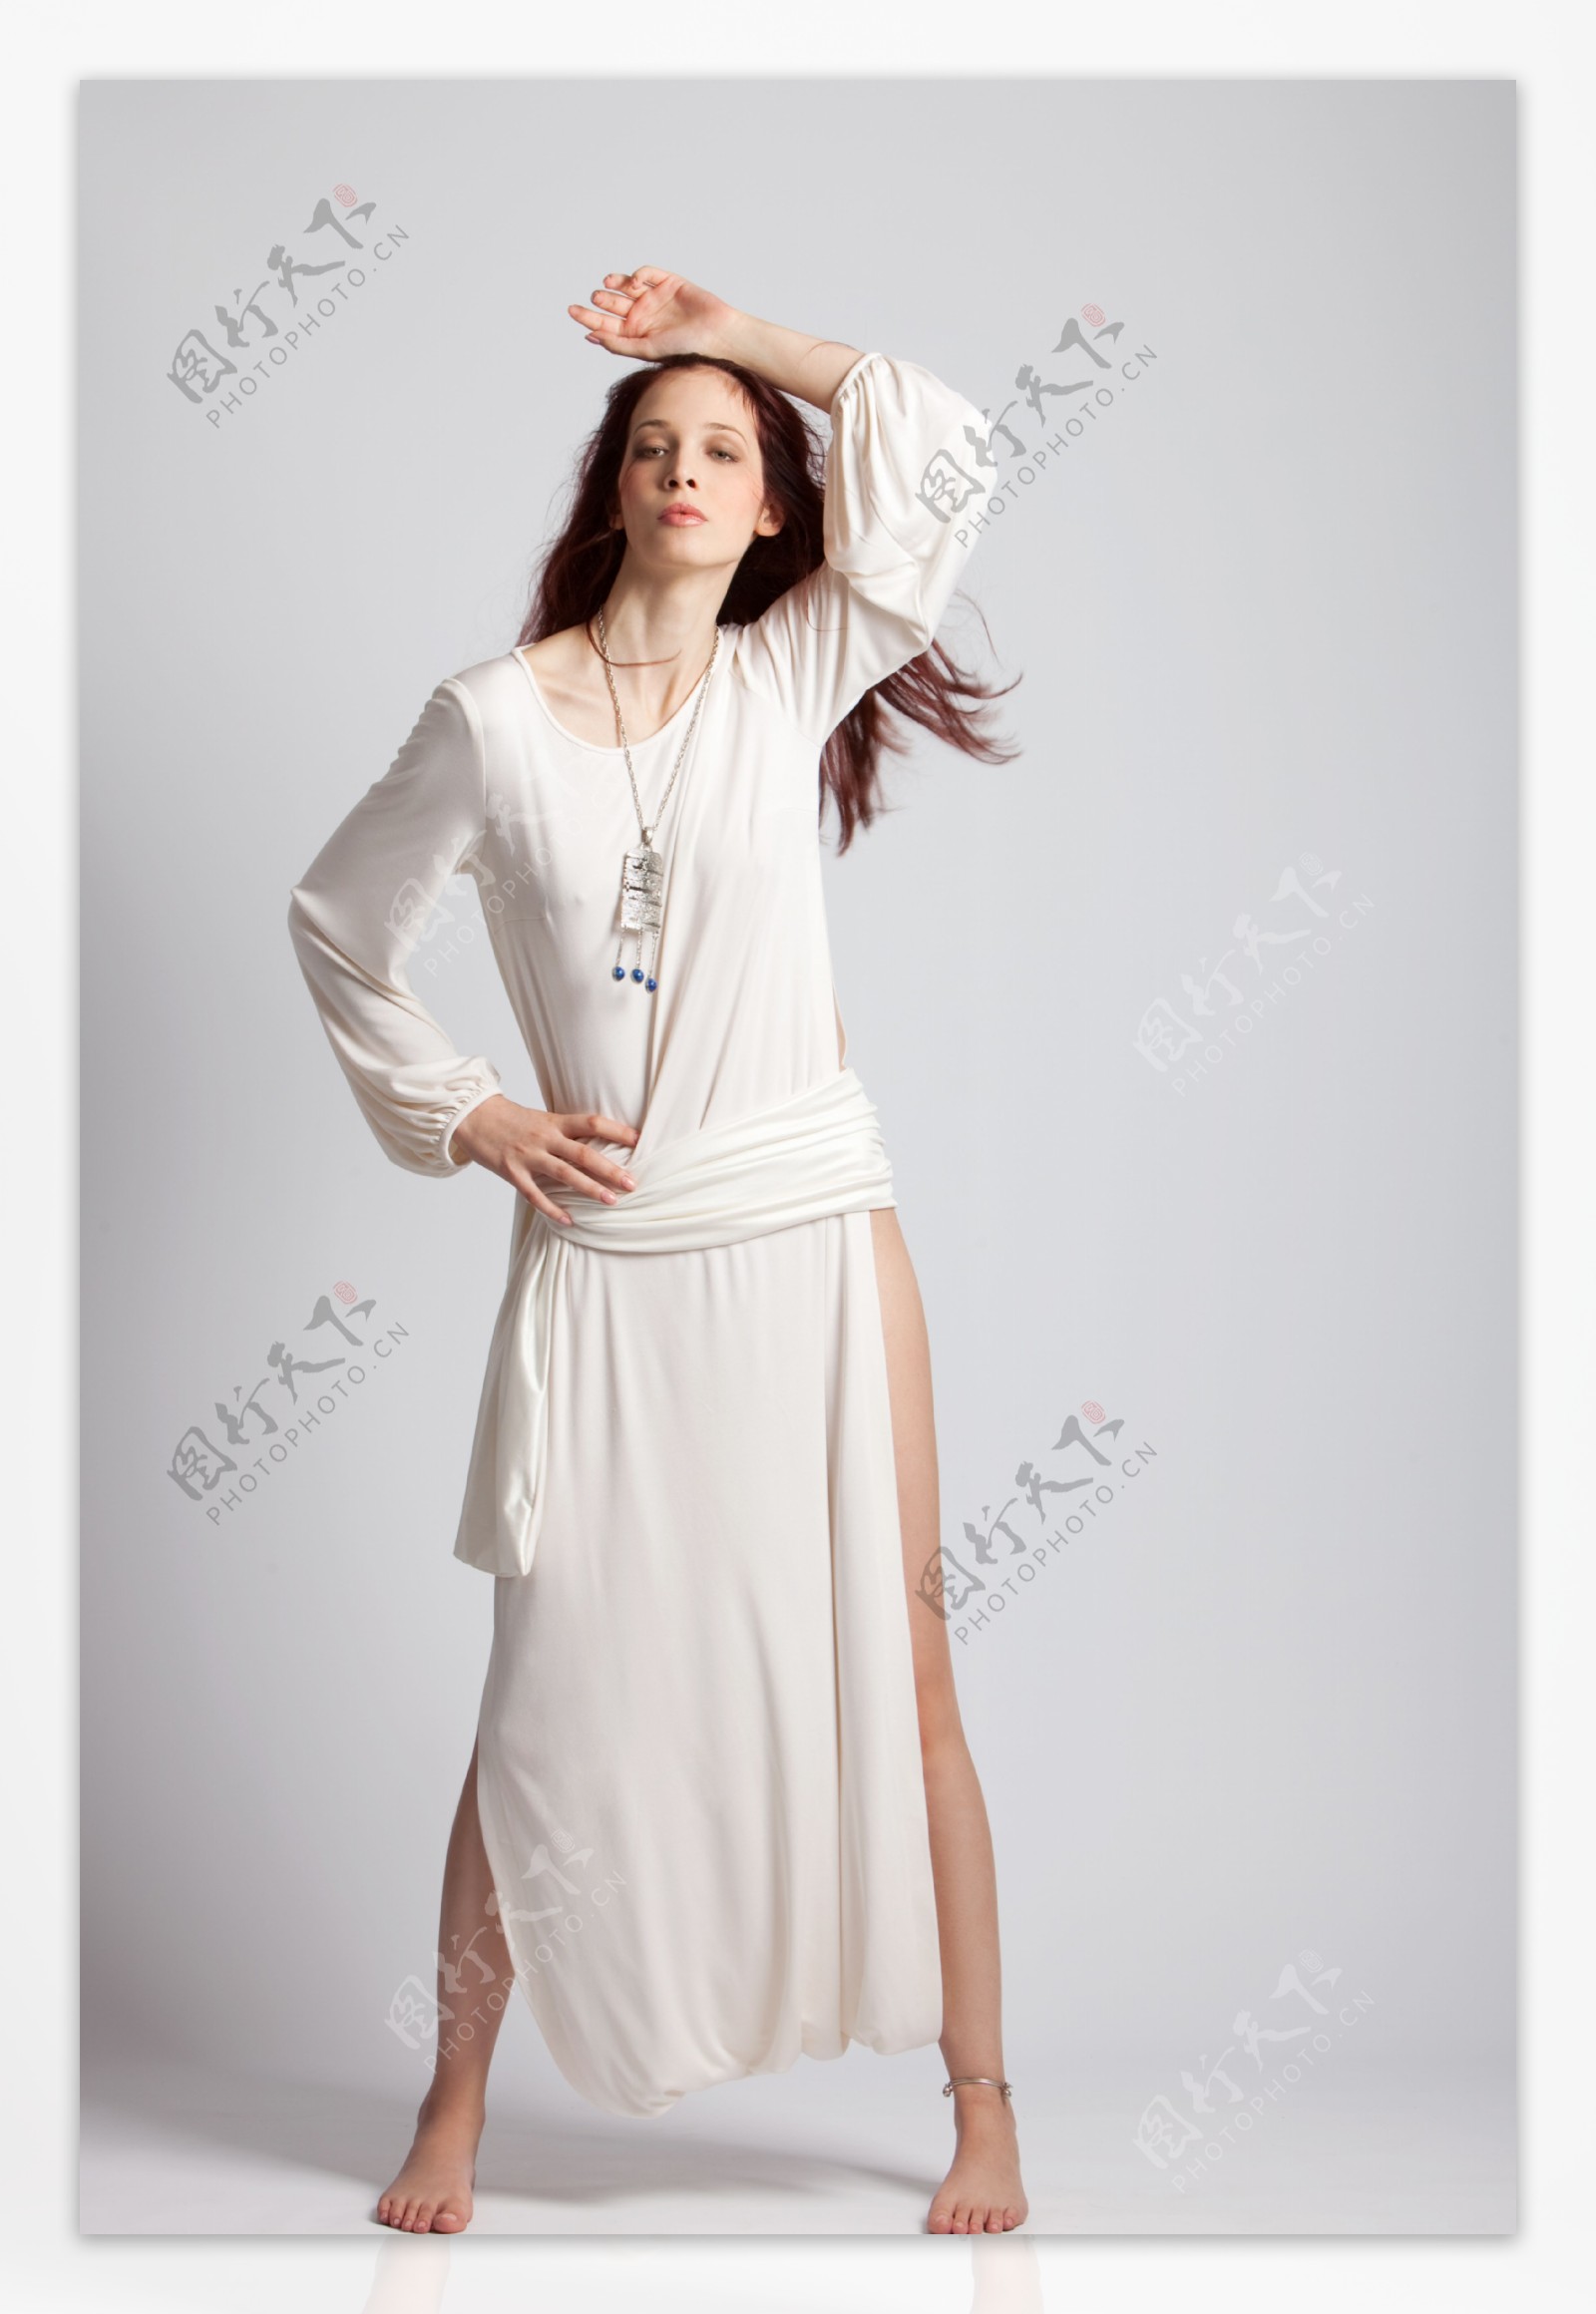 穿白色连衣裙的美女02图片